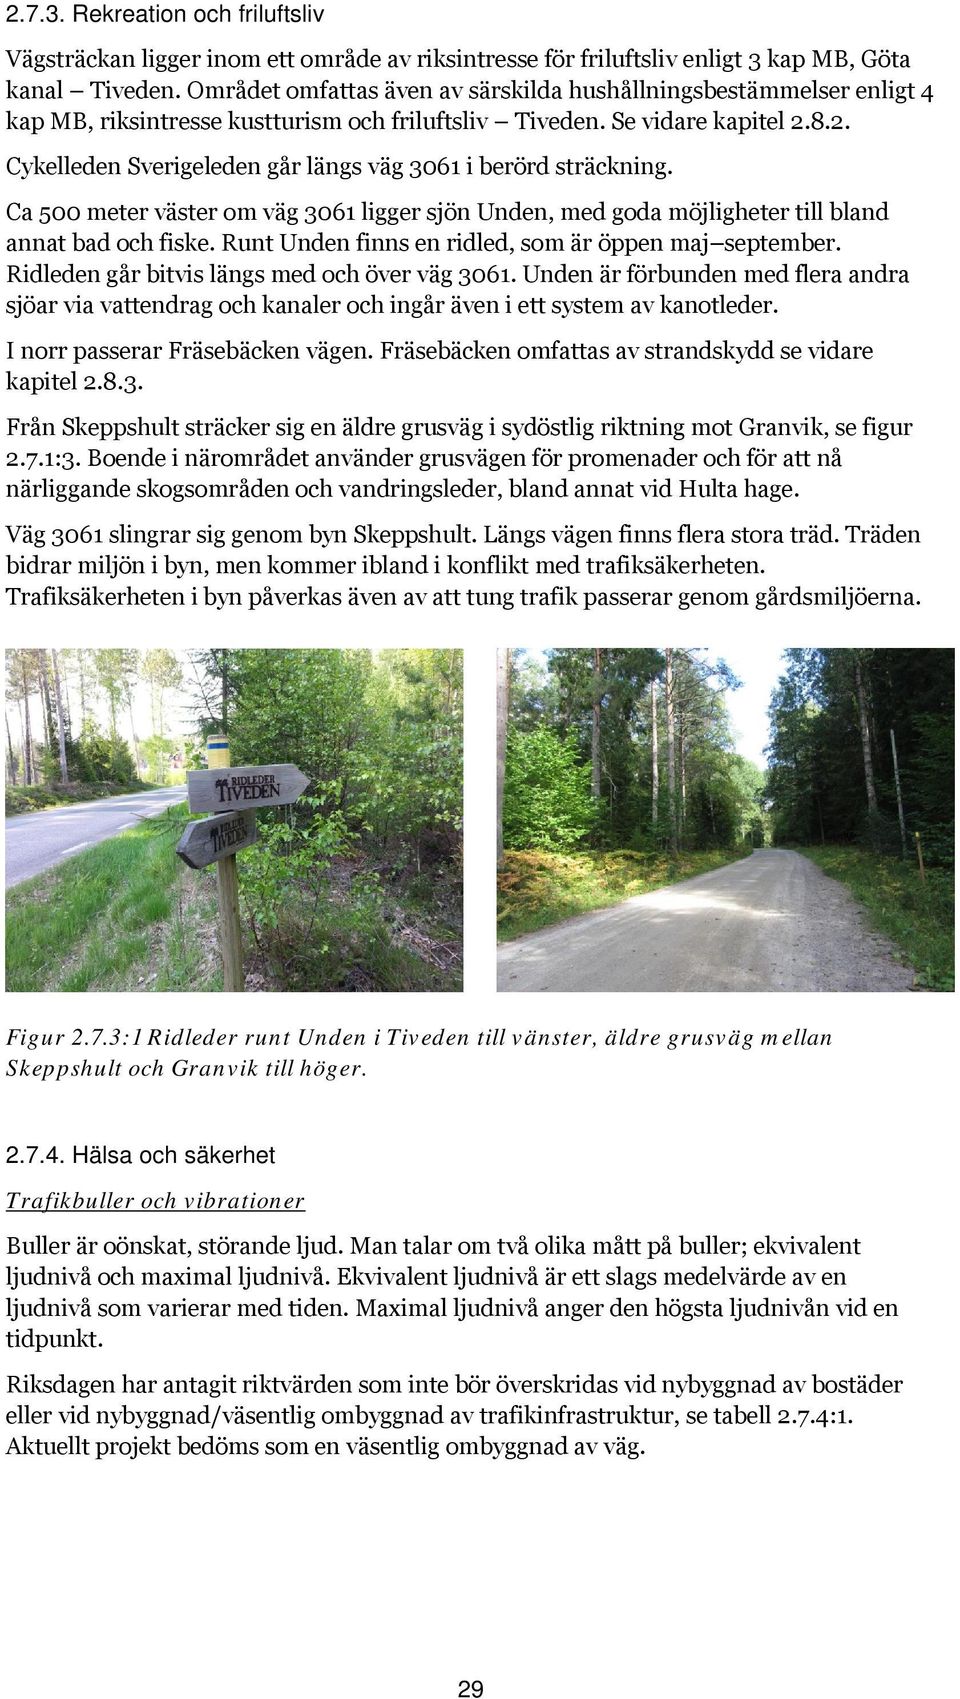 8.2. Cykelleden Sverigeleden går längs väg 3061 i berörd sträckning. Ca 500 meter väster om väg 3061 ligger sjön Unden, med goda möjligheter till bland annat bad och fiske.